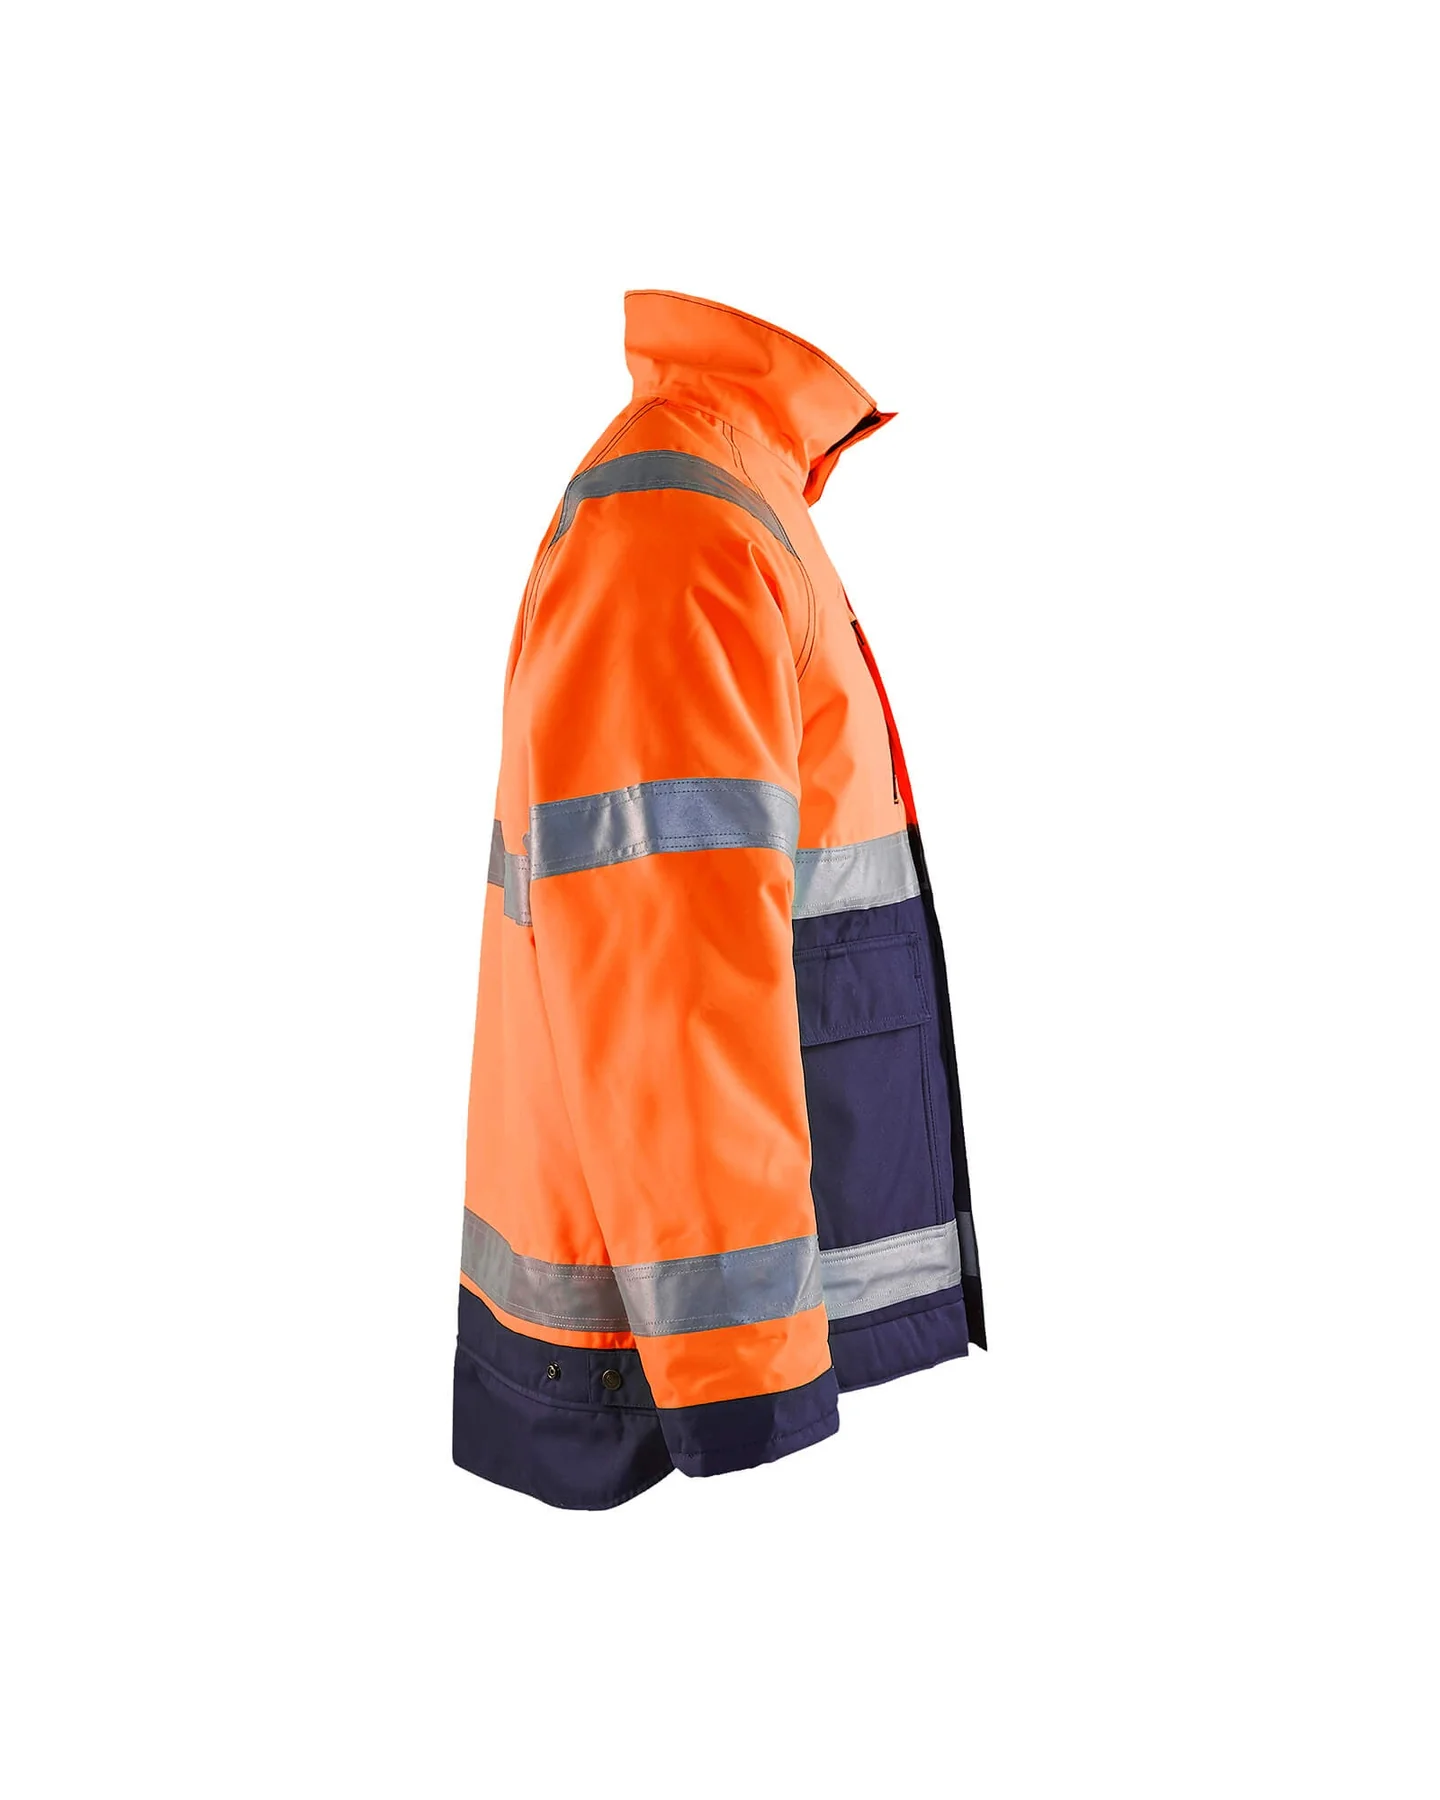 blaklader-hi-vis-winter-jacket-48271977-orange-navy-blue-2-1800×1800.webp